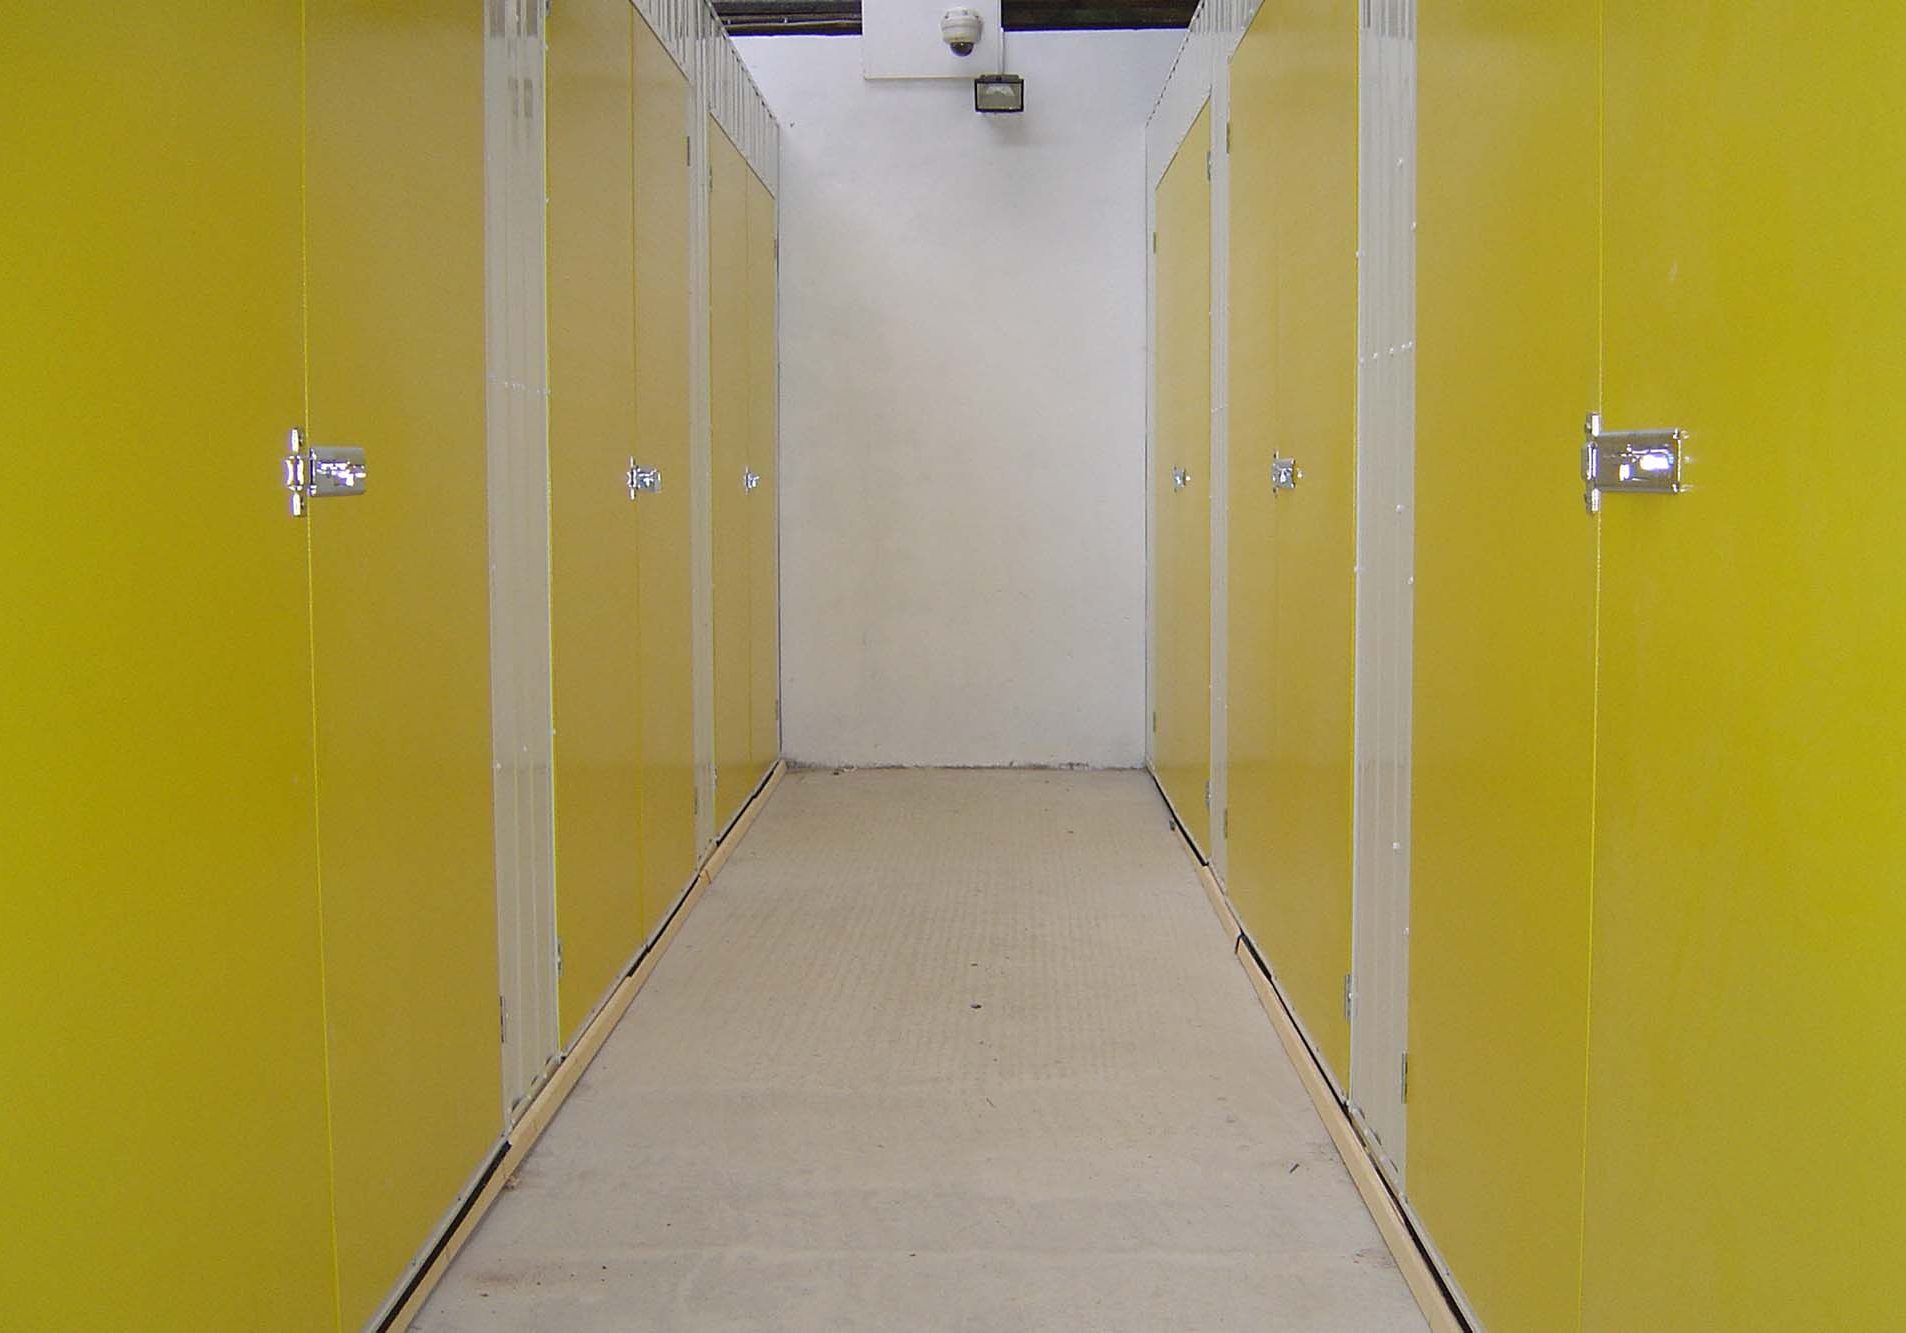 Yellow storage lockers